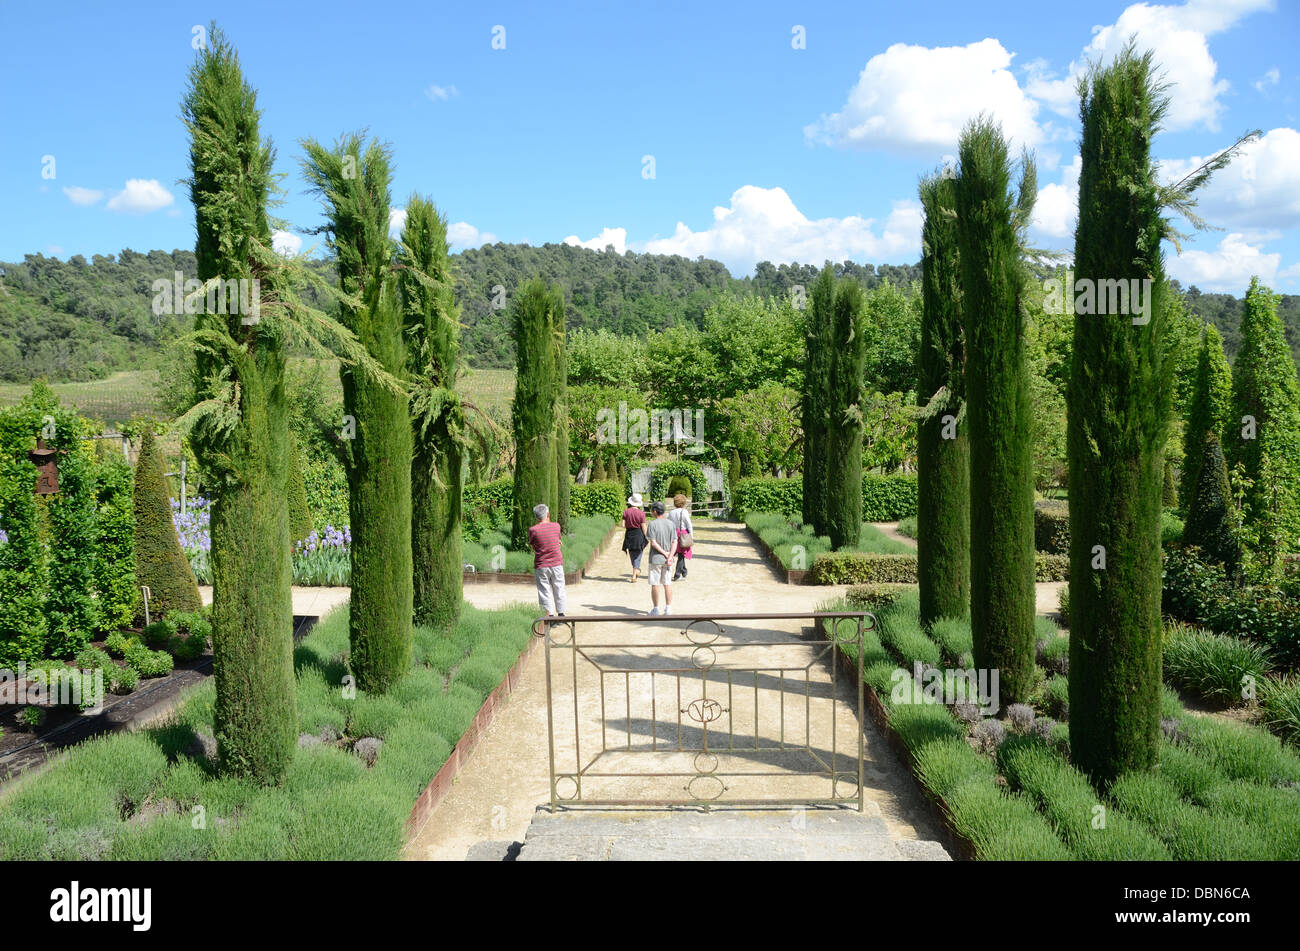 Linien, Reihen oder Allee von Cypressebäumen & Besucher oder Touristen im Garten am Château Val Joannis Pertuis Luberon Provence Frankreich Stockfoto